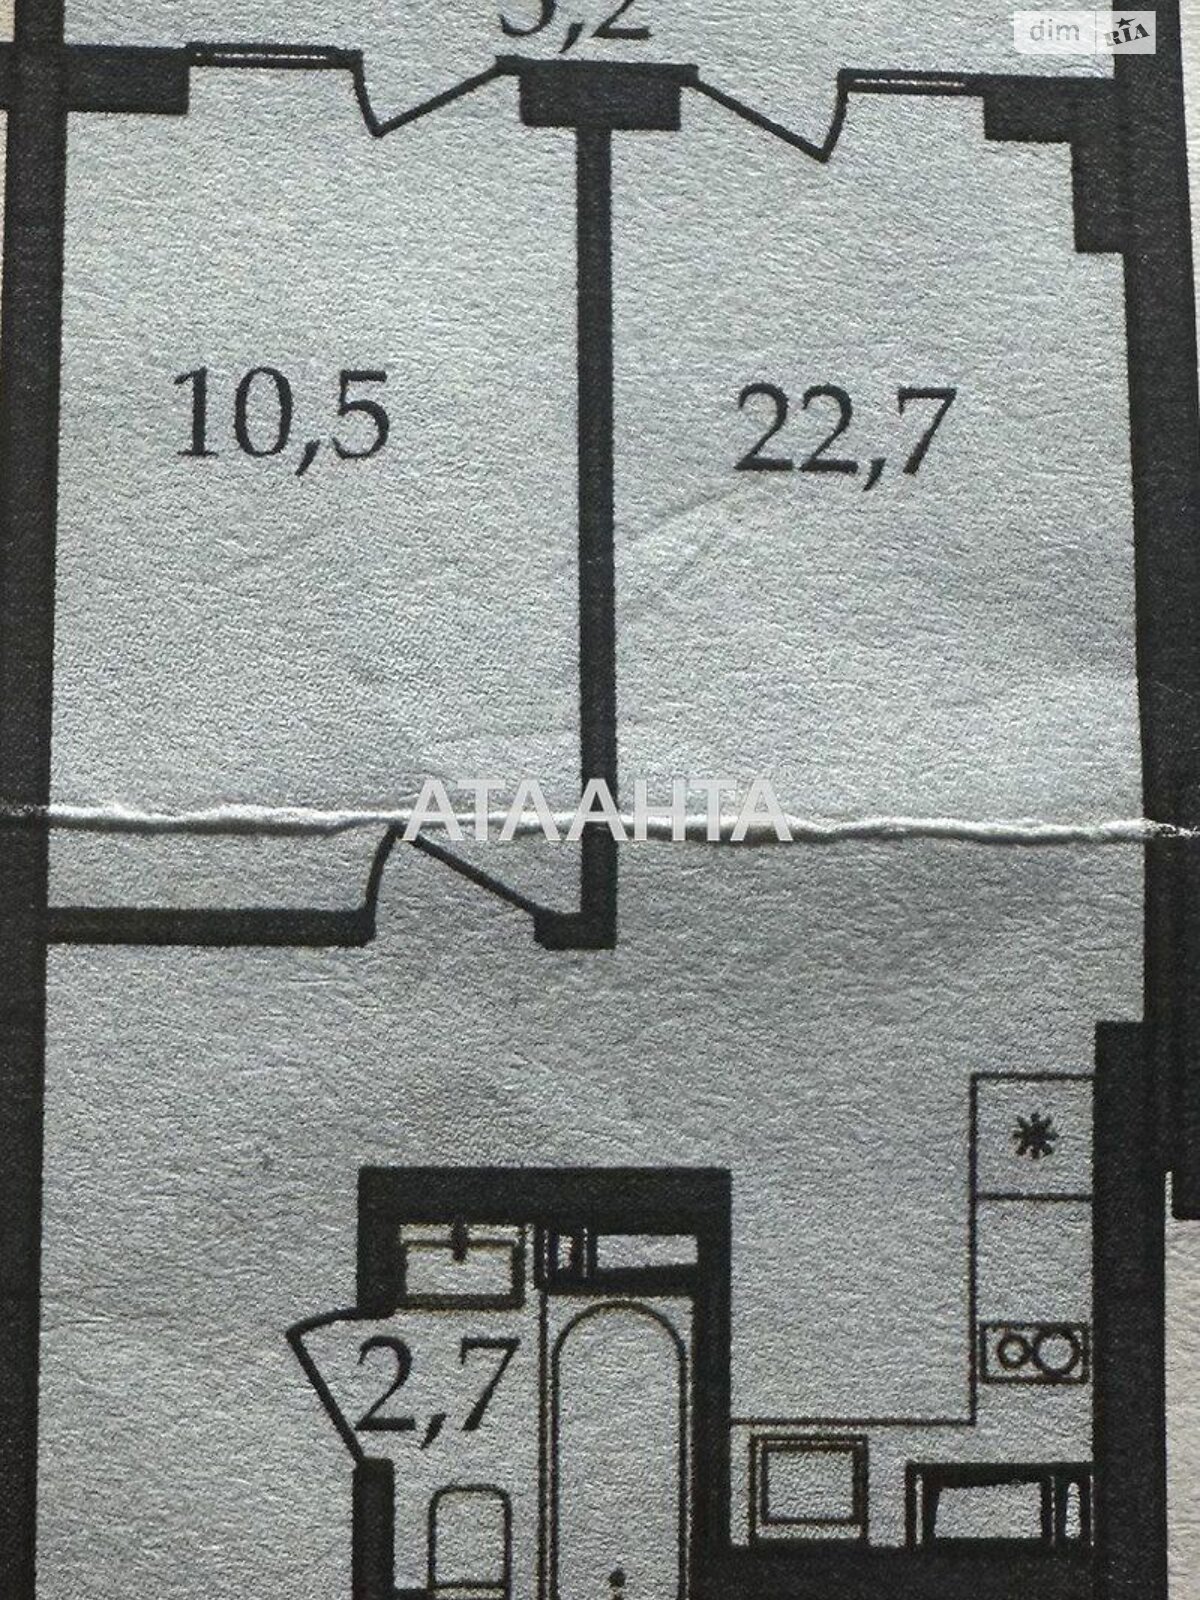 Продажа однокомнатной квартиры в Софиевской Борщаговке, на ул. Боголюбова 43, фото 1